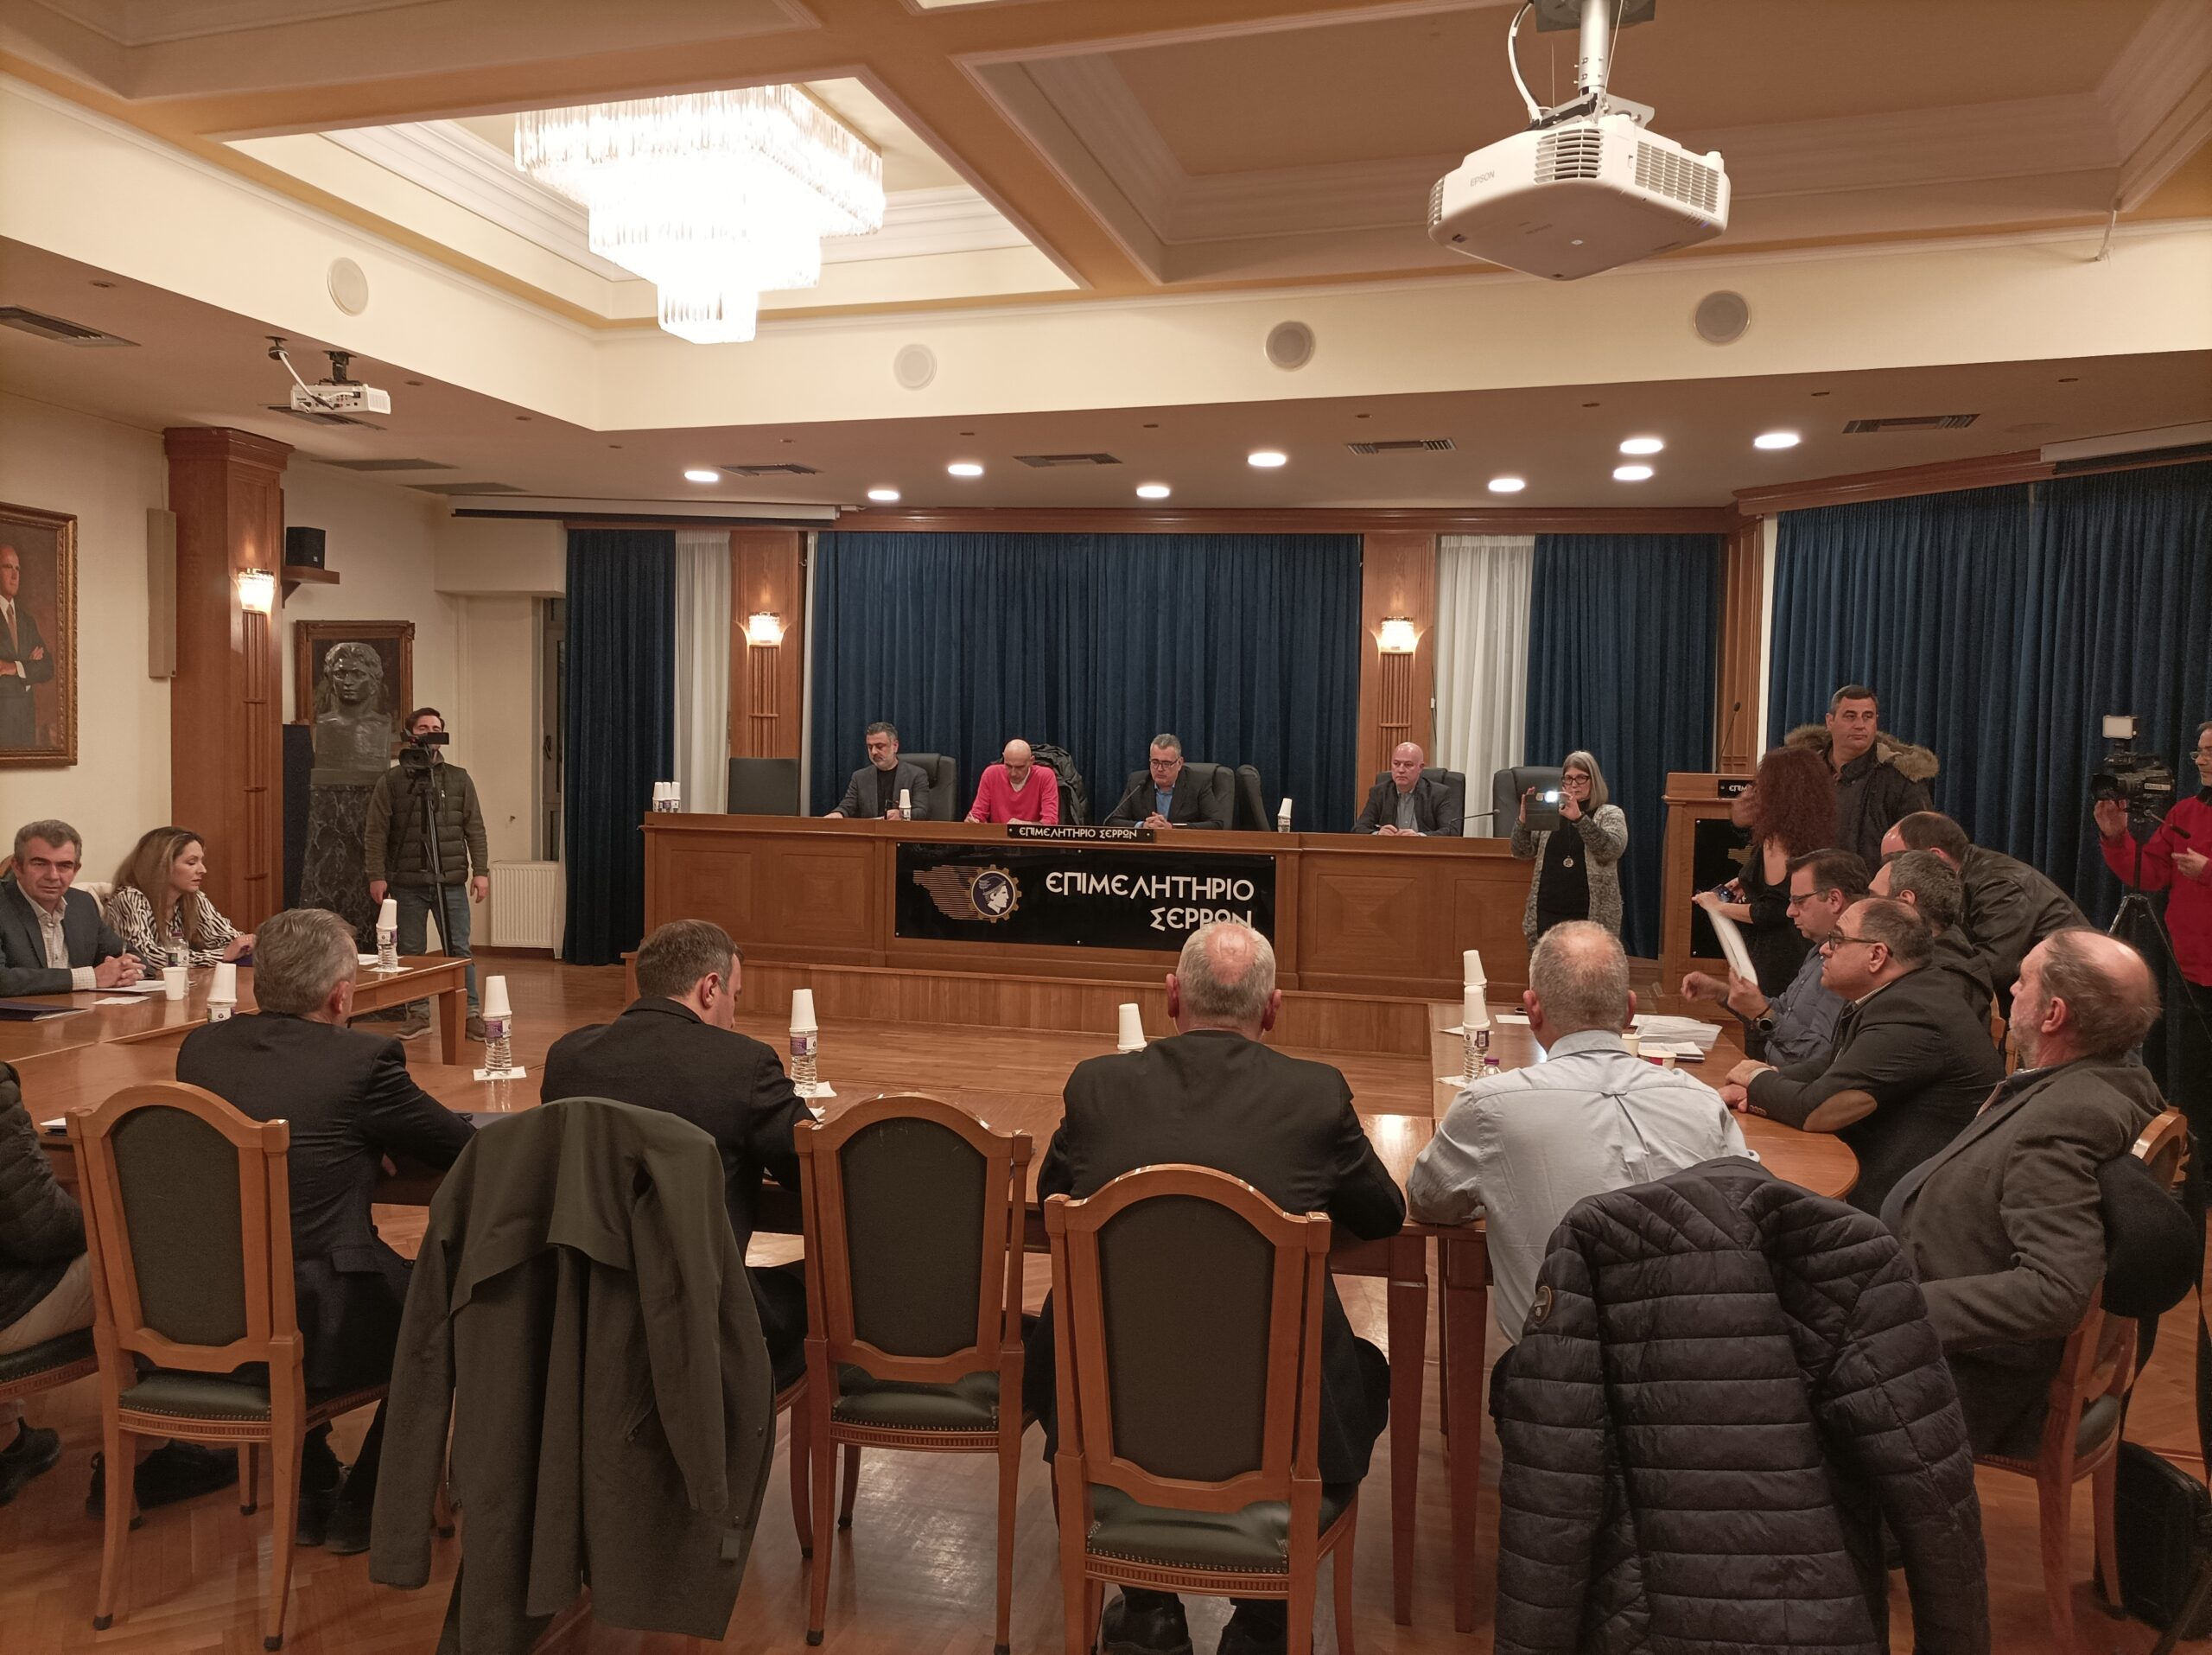 Σέρρες: Αντιδράσεις και ανησυχία για το φορολογικό νομοσχέδιο-Σύσκεψη στο Επιμελητήριο